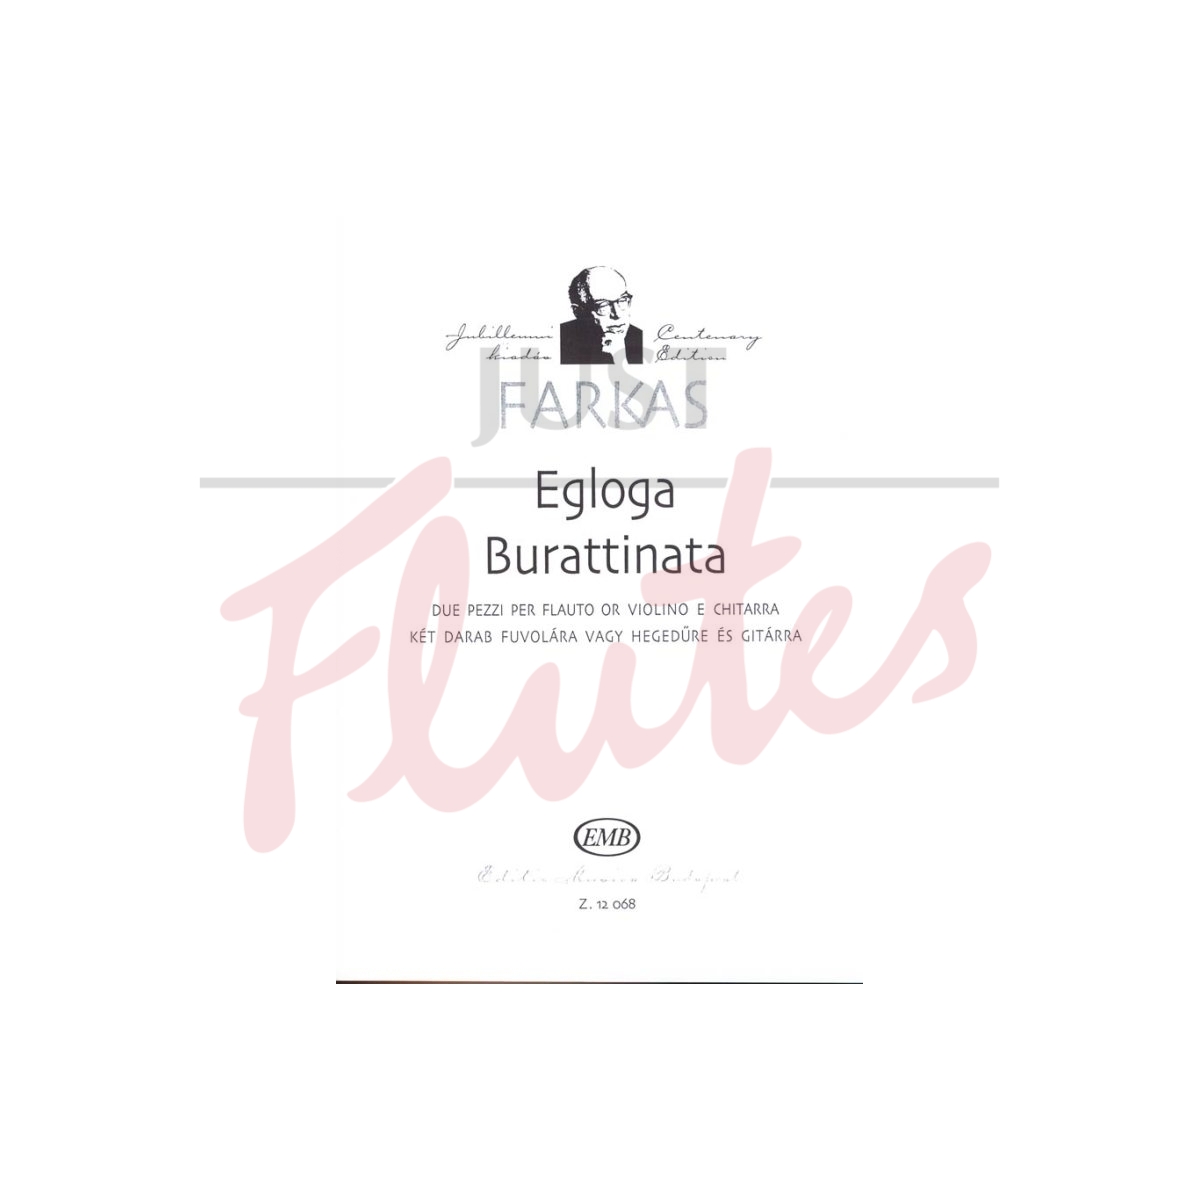 Egloga and Burittinata